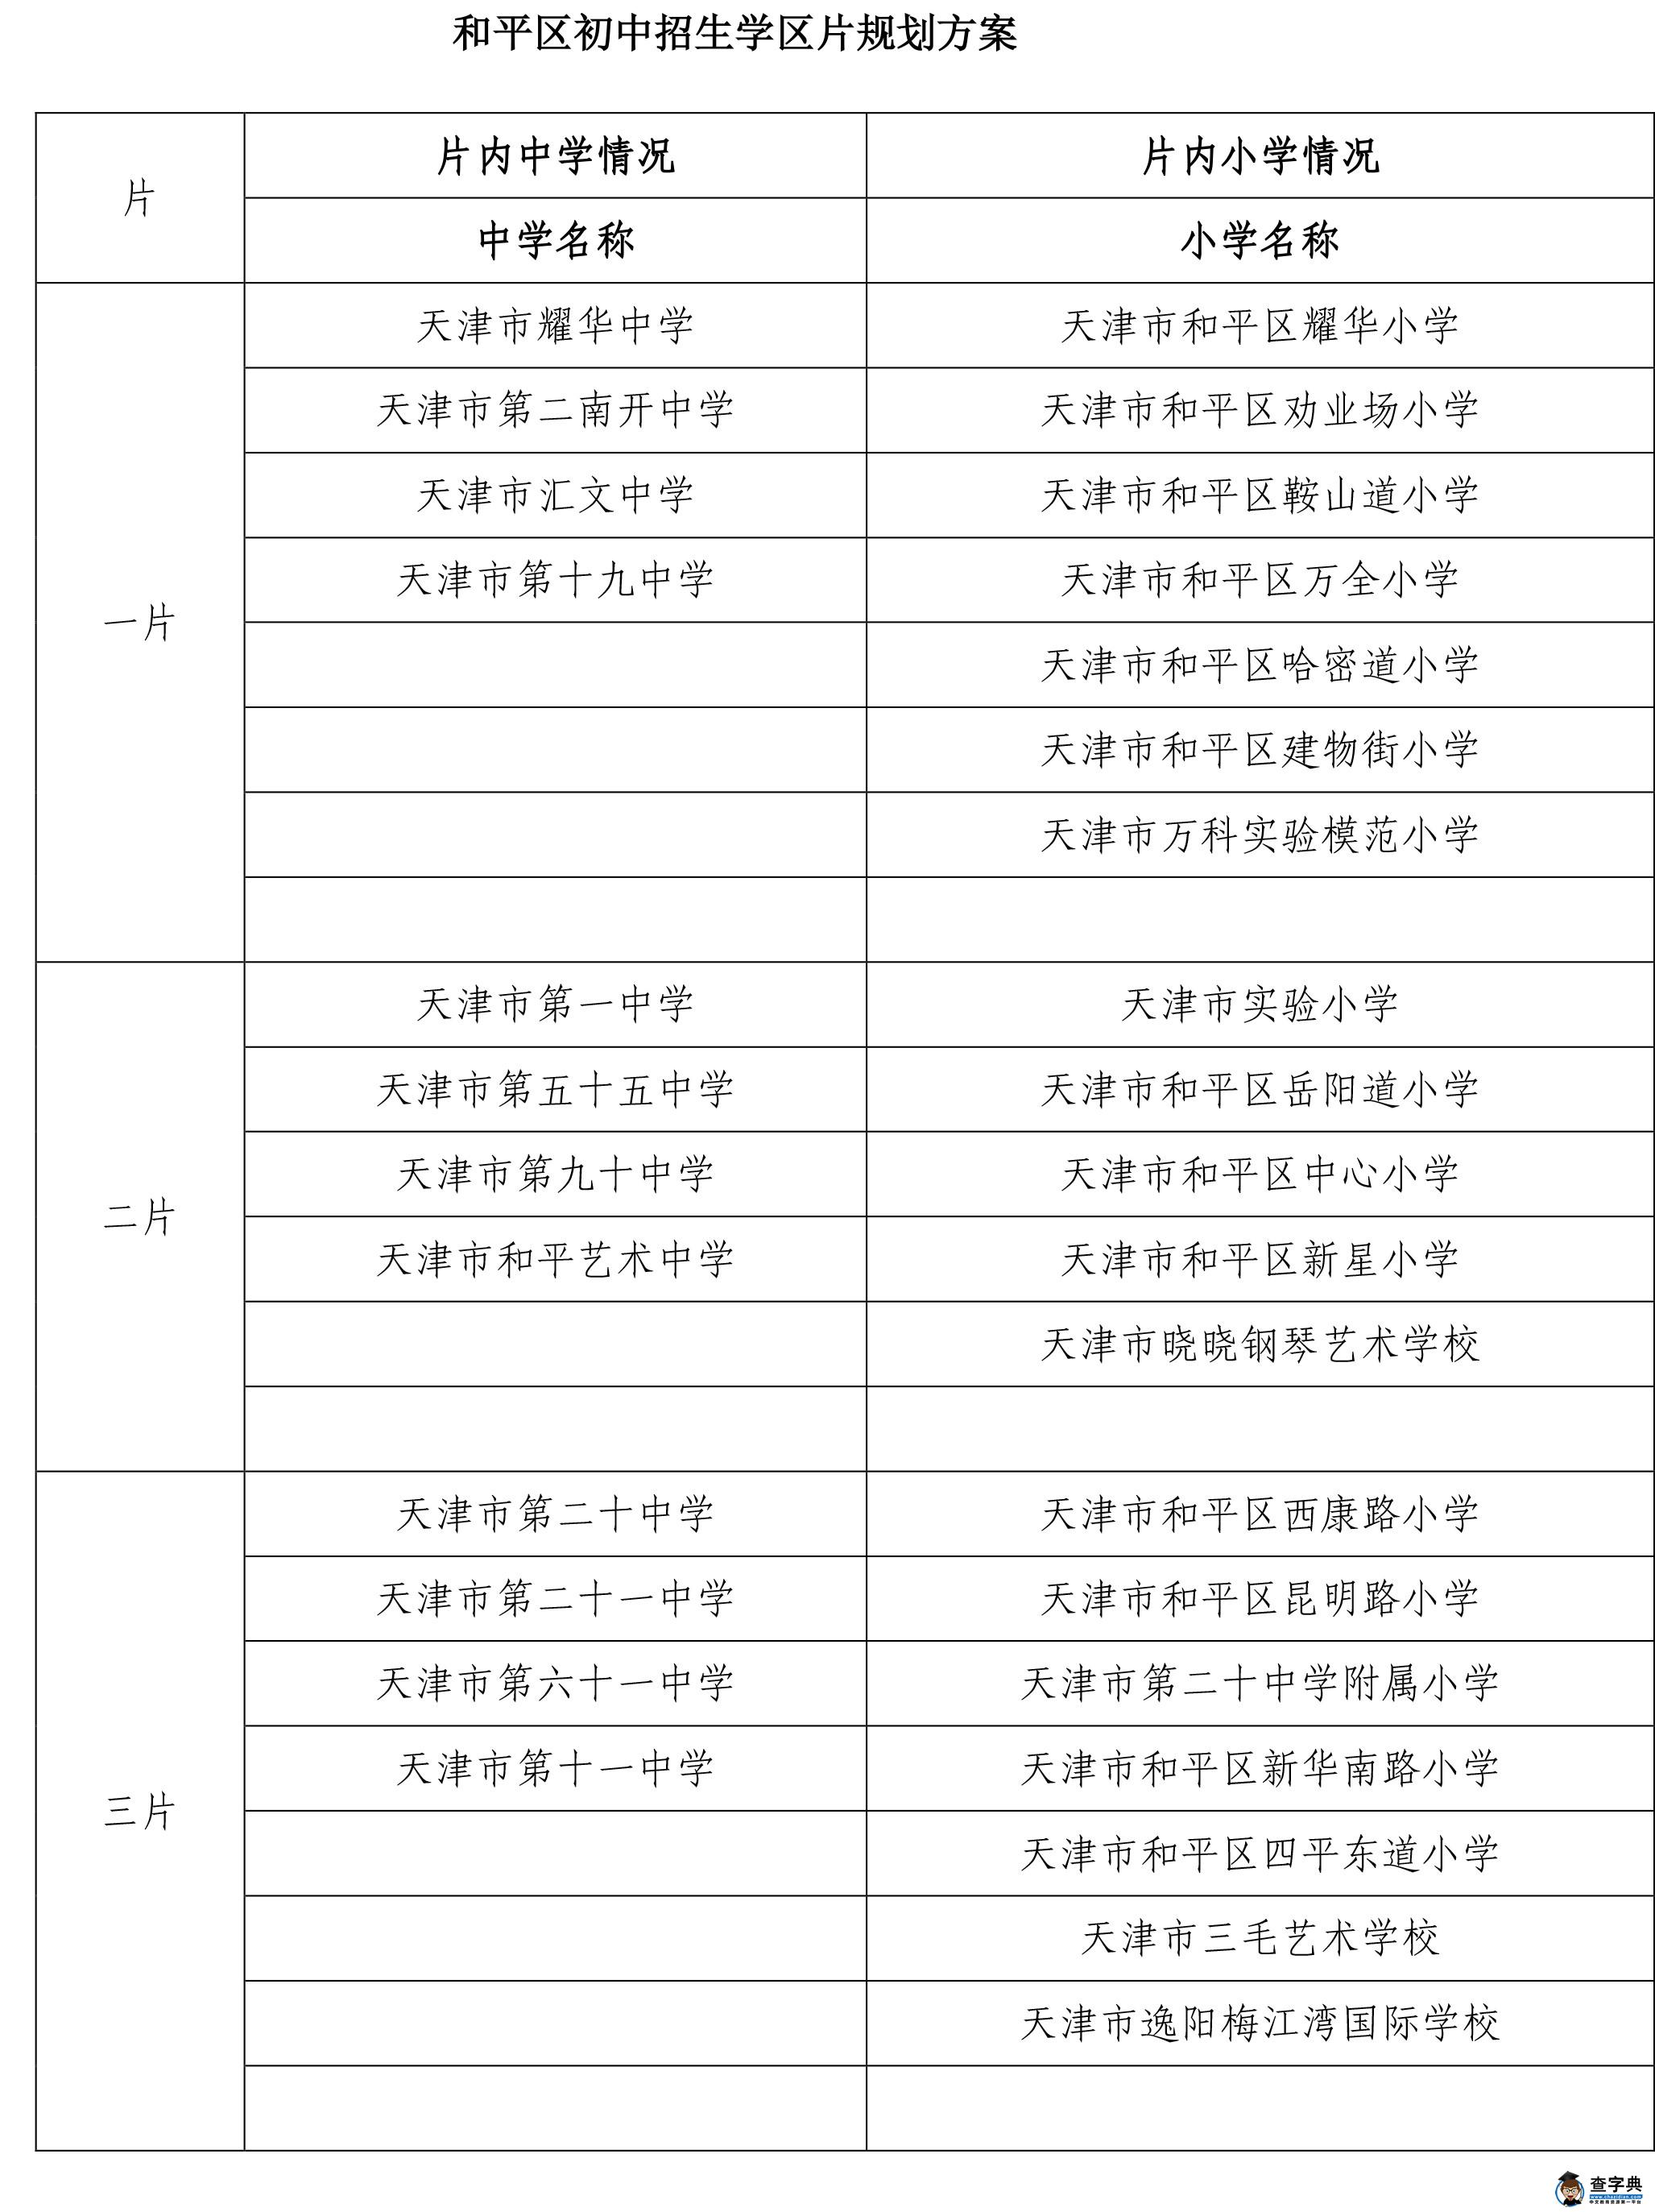 2015天津小升初划片一览表1